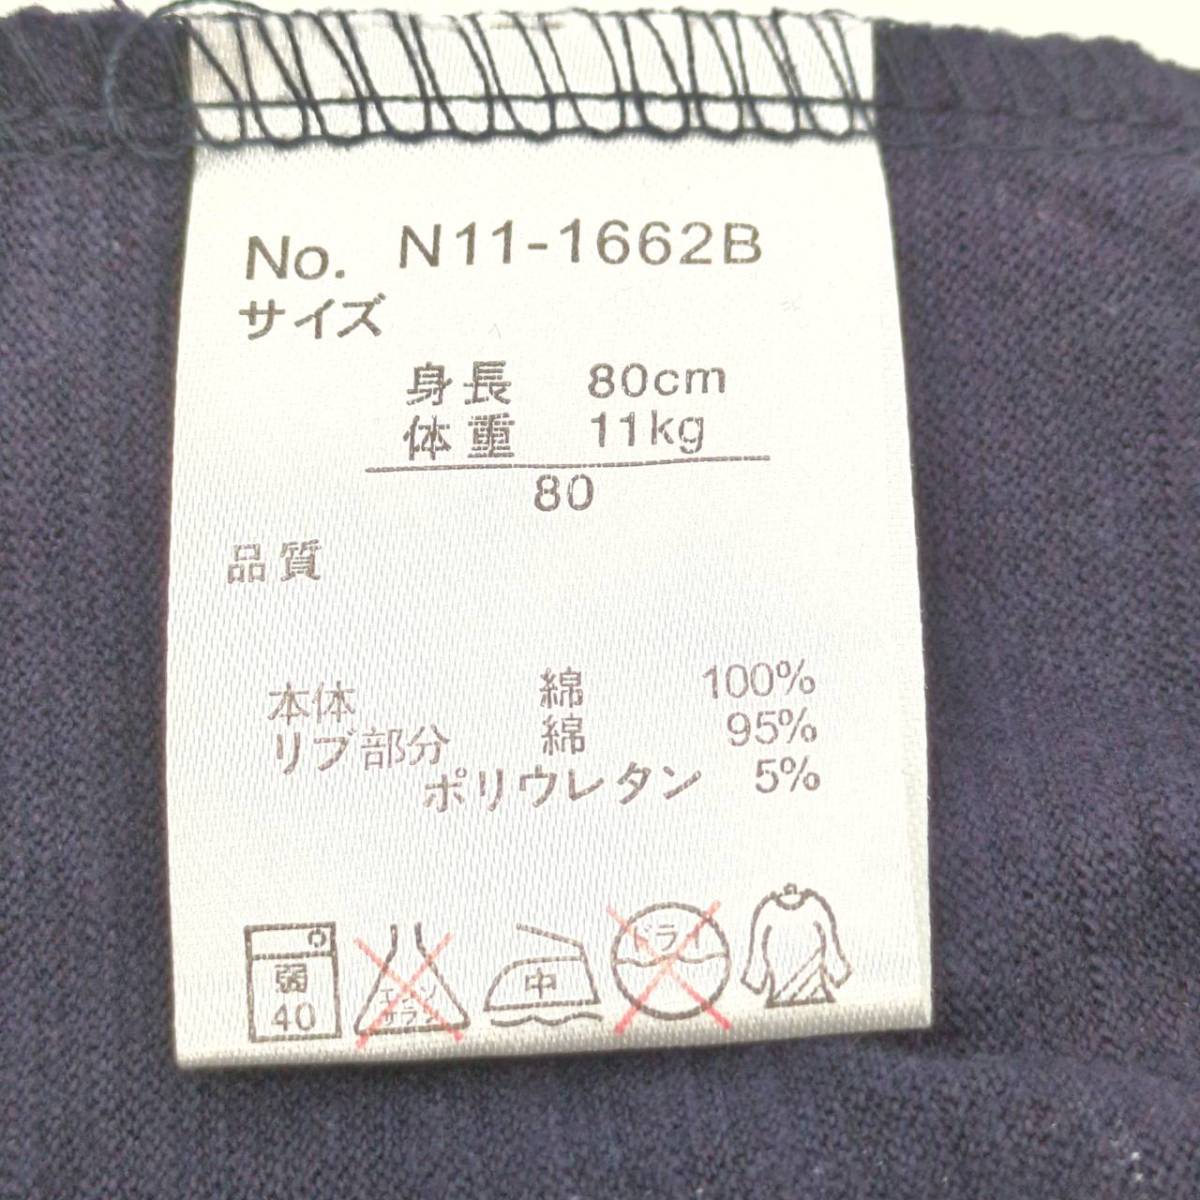 80(ベビー) とりぷるまじっく オルソブルー Tシャツ ネイビー 半袖 リユース ultramto ts1650